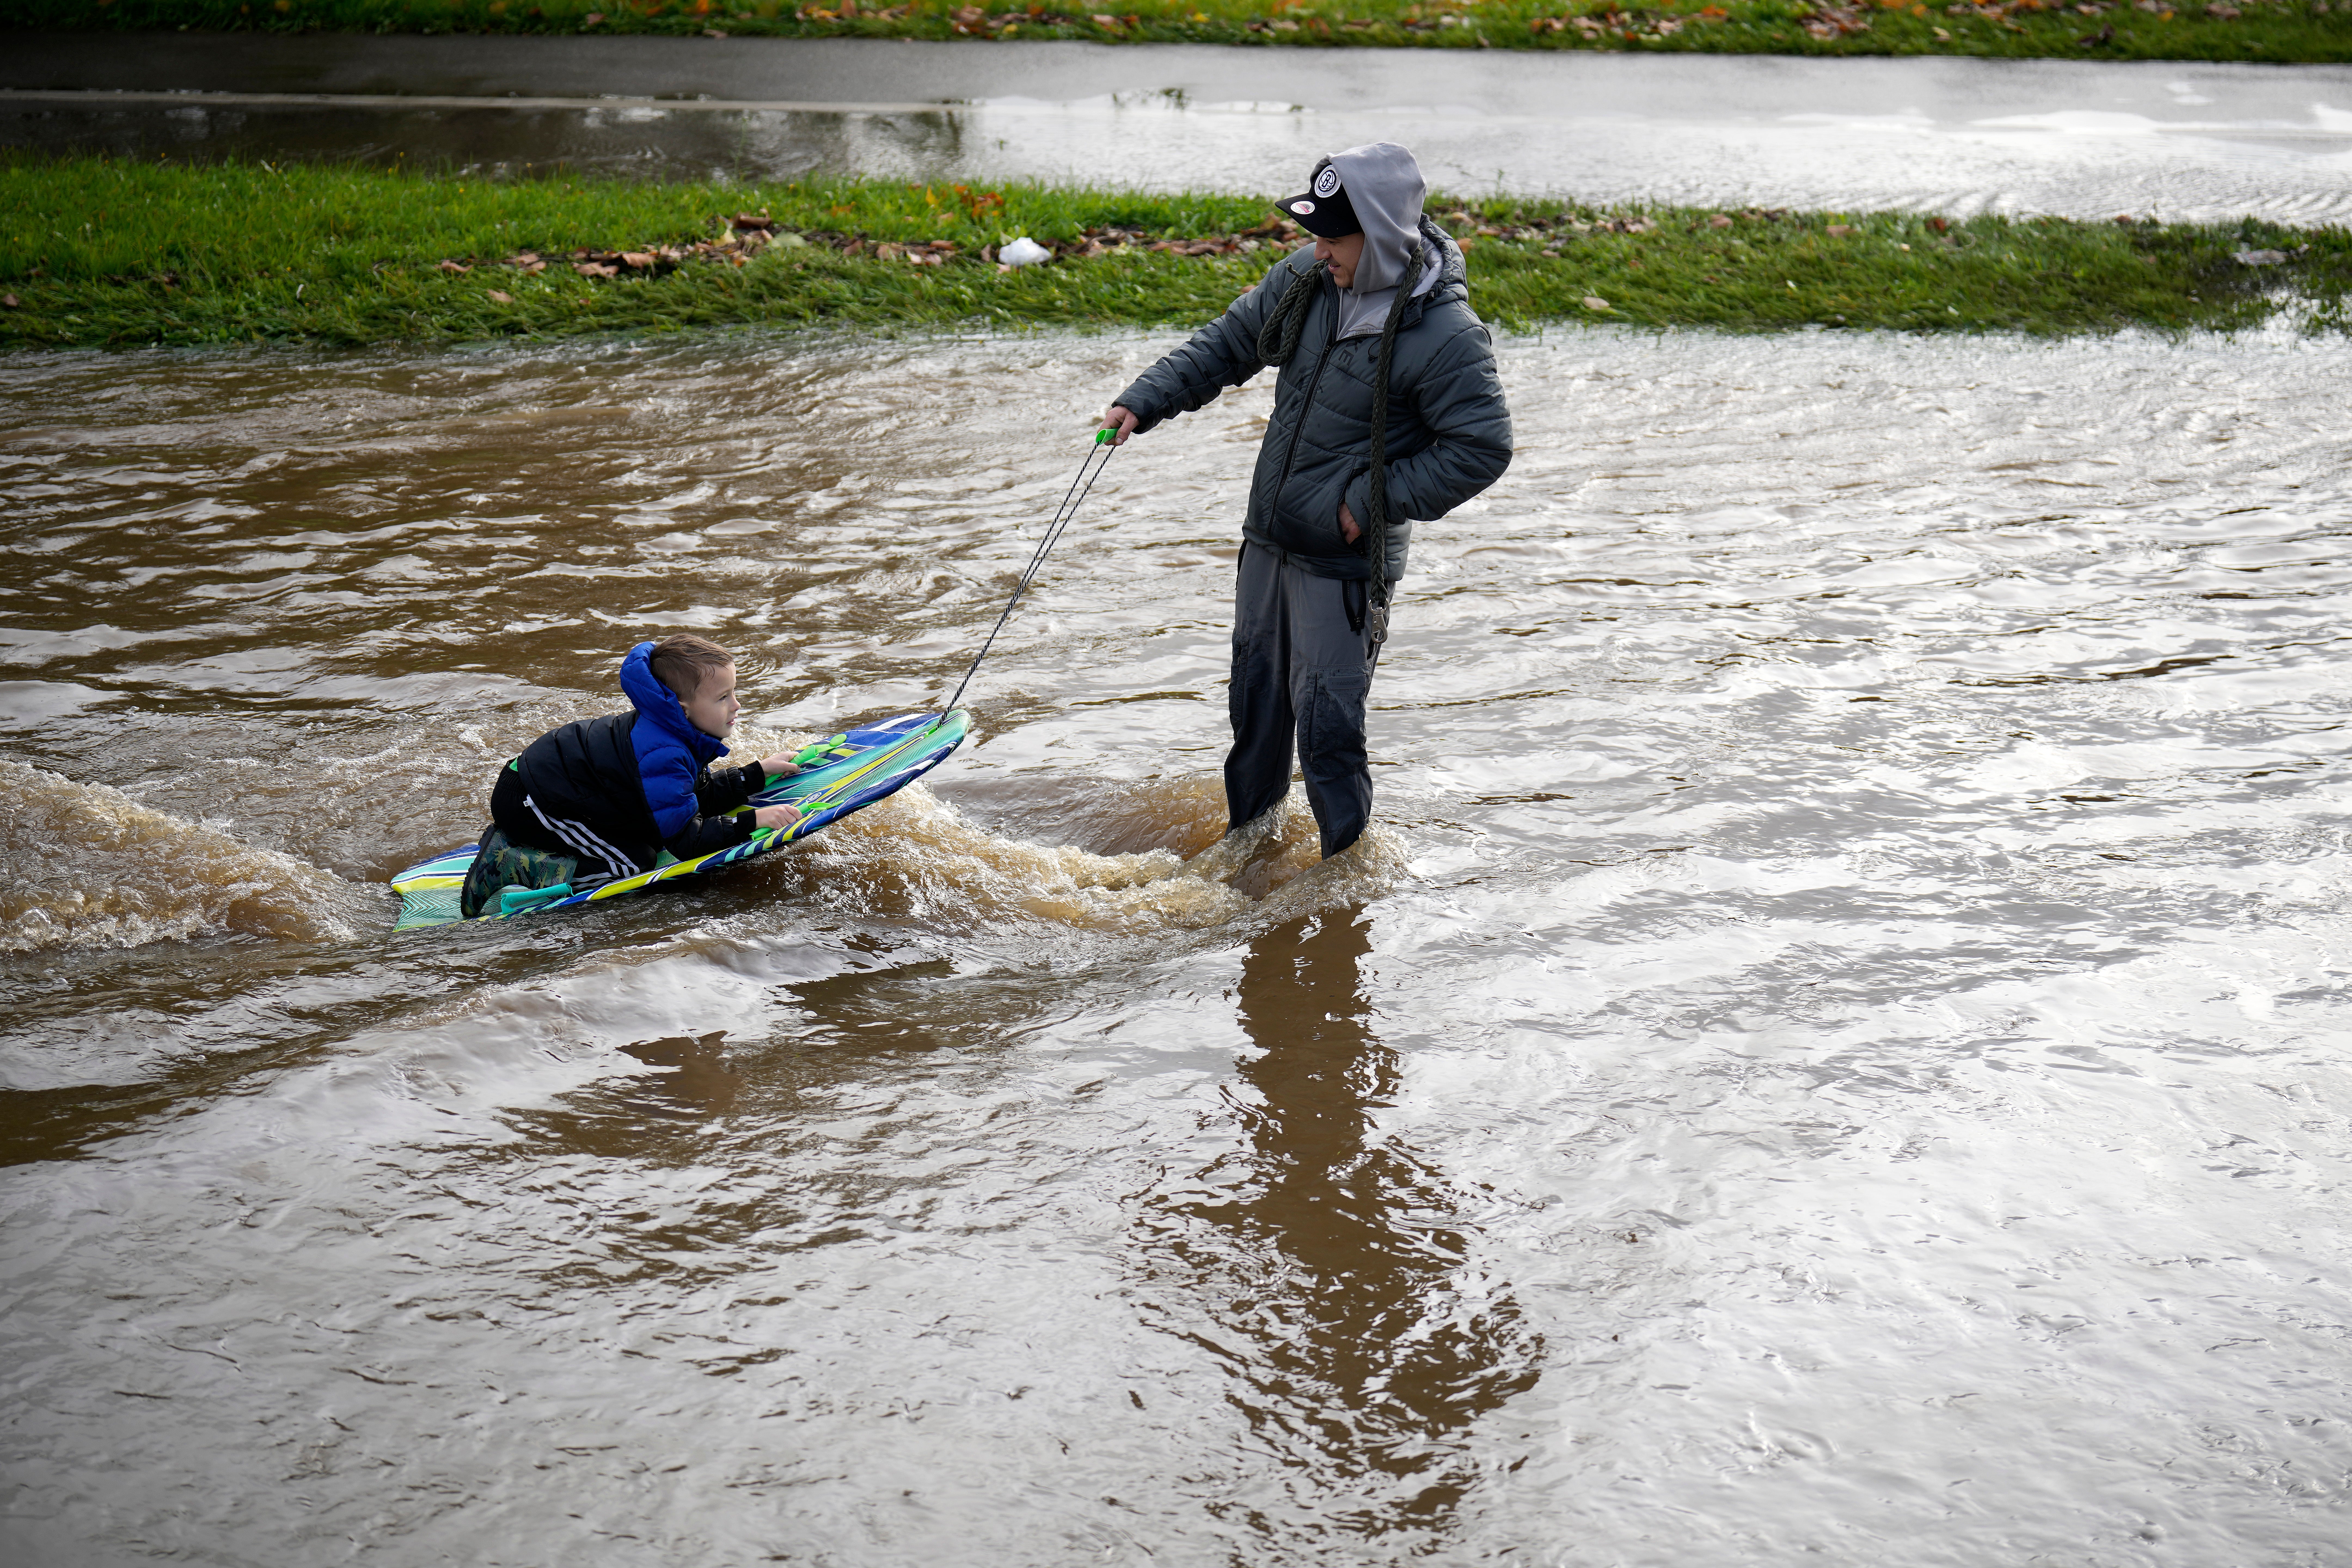 A man pulls a boy on a bodyboard through floodwater